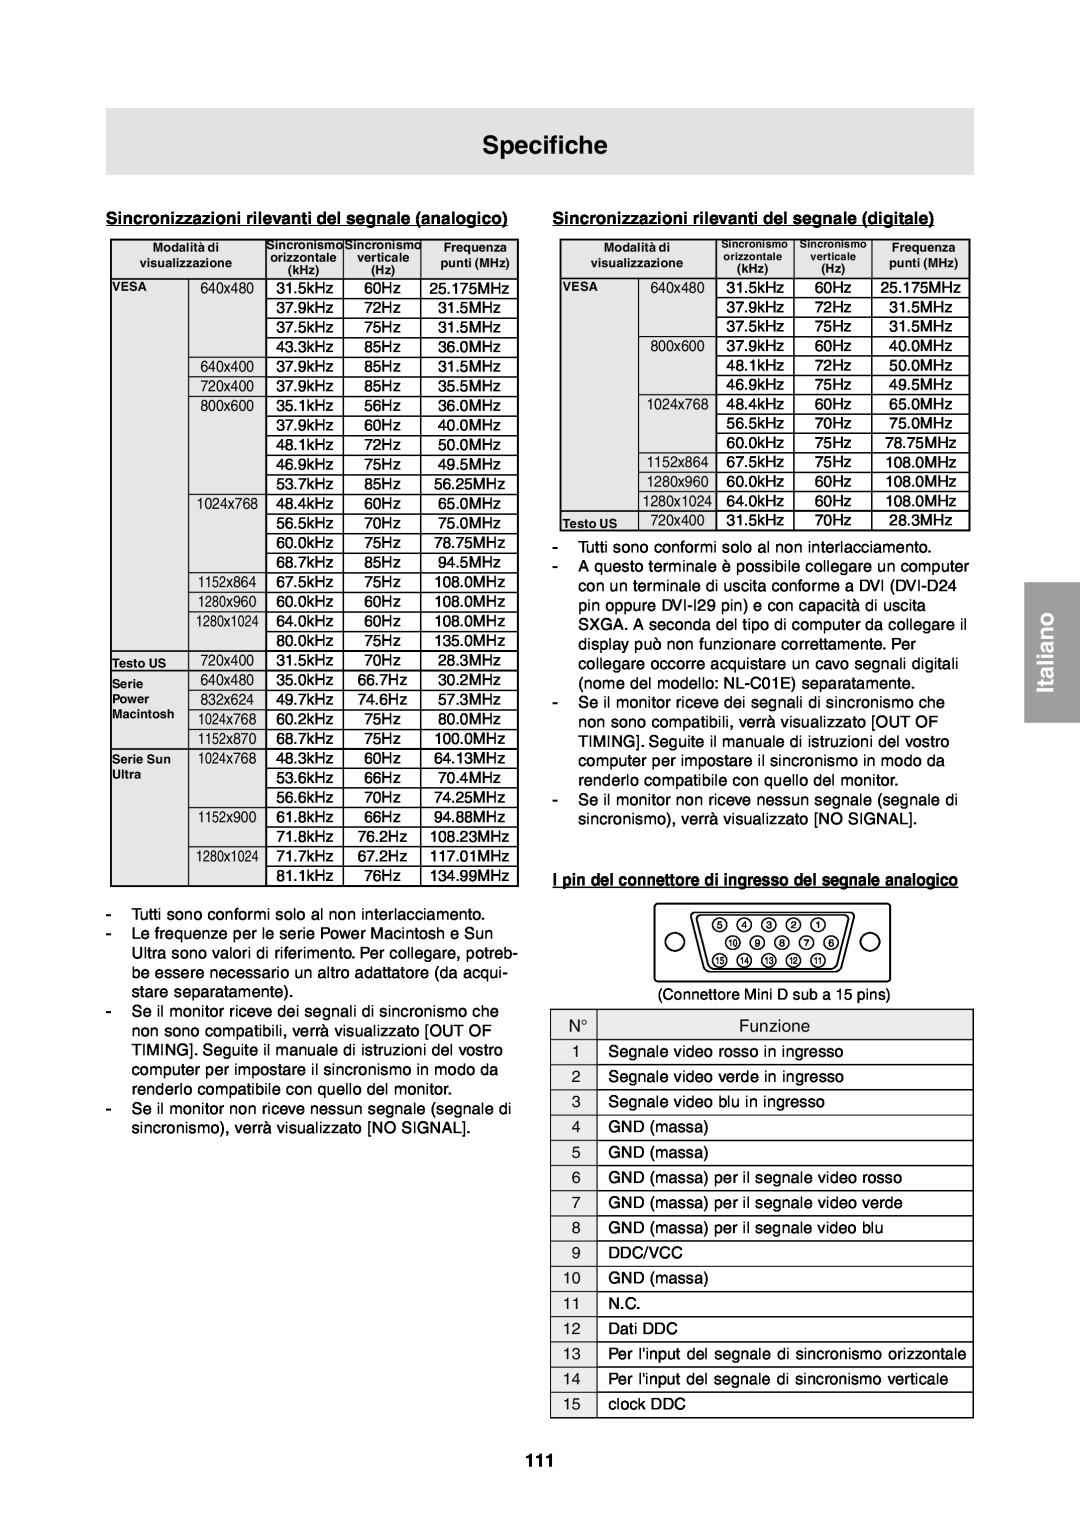 Sharp LL-T1811W operation manual Specifiche, Sincronizzazioni rilevanti del segnale analogico, Italiano 